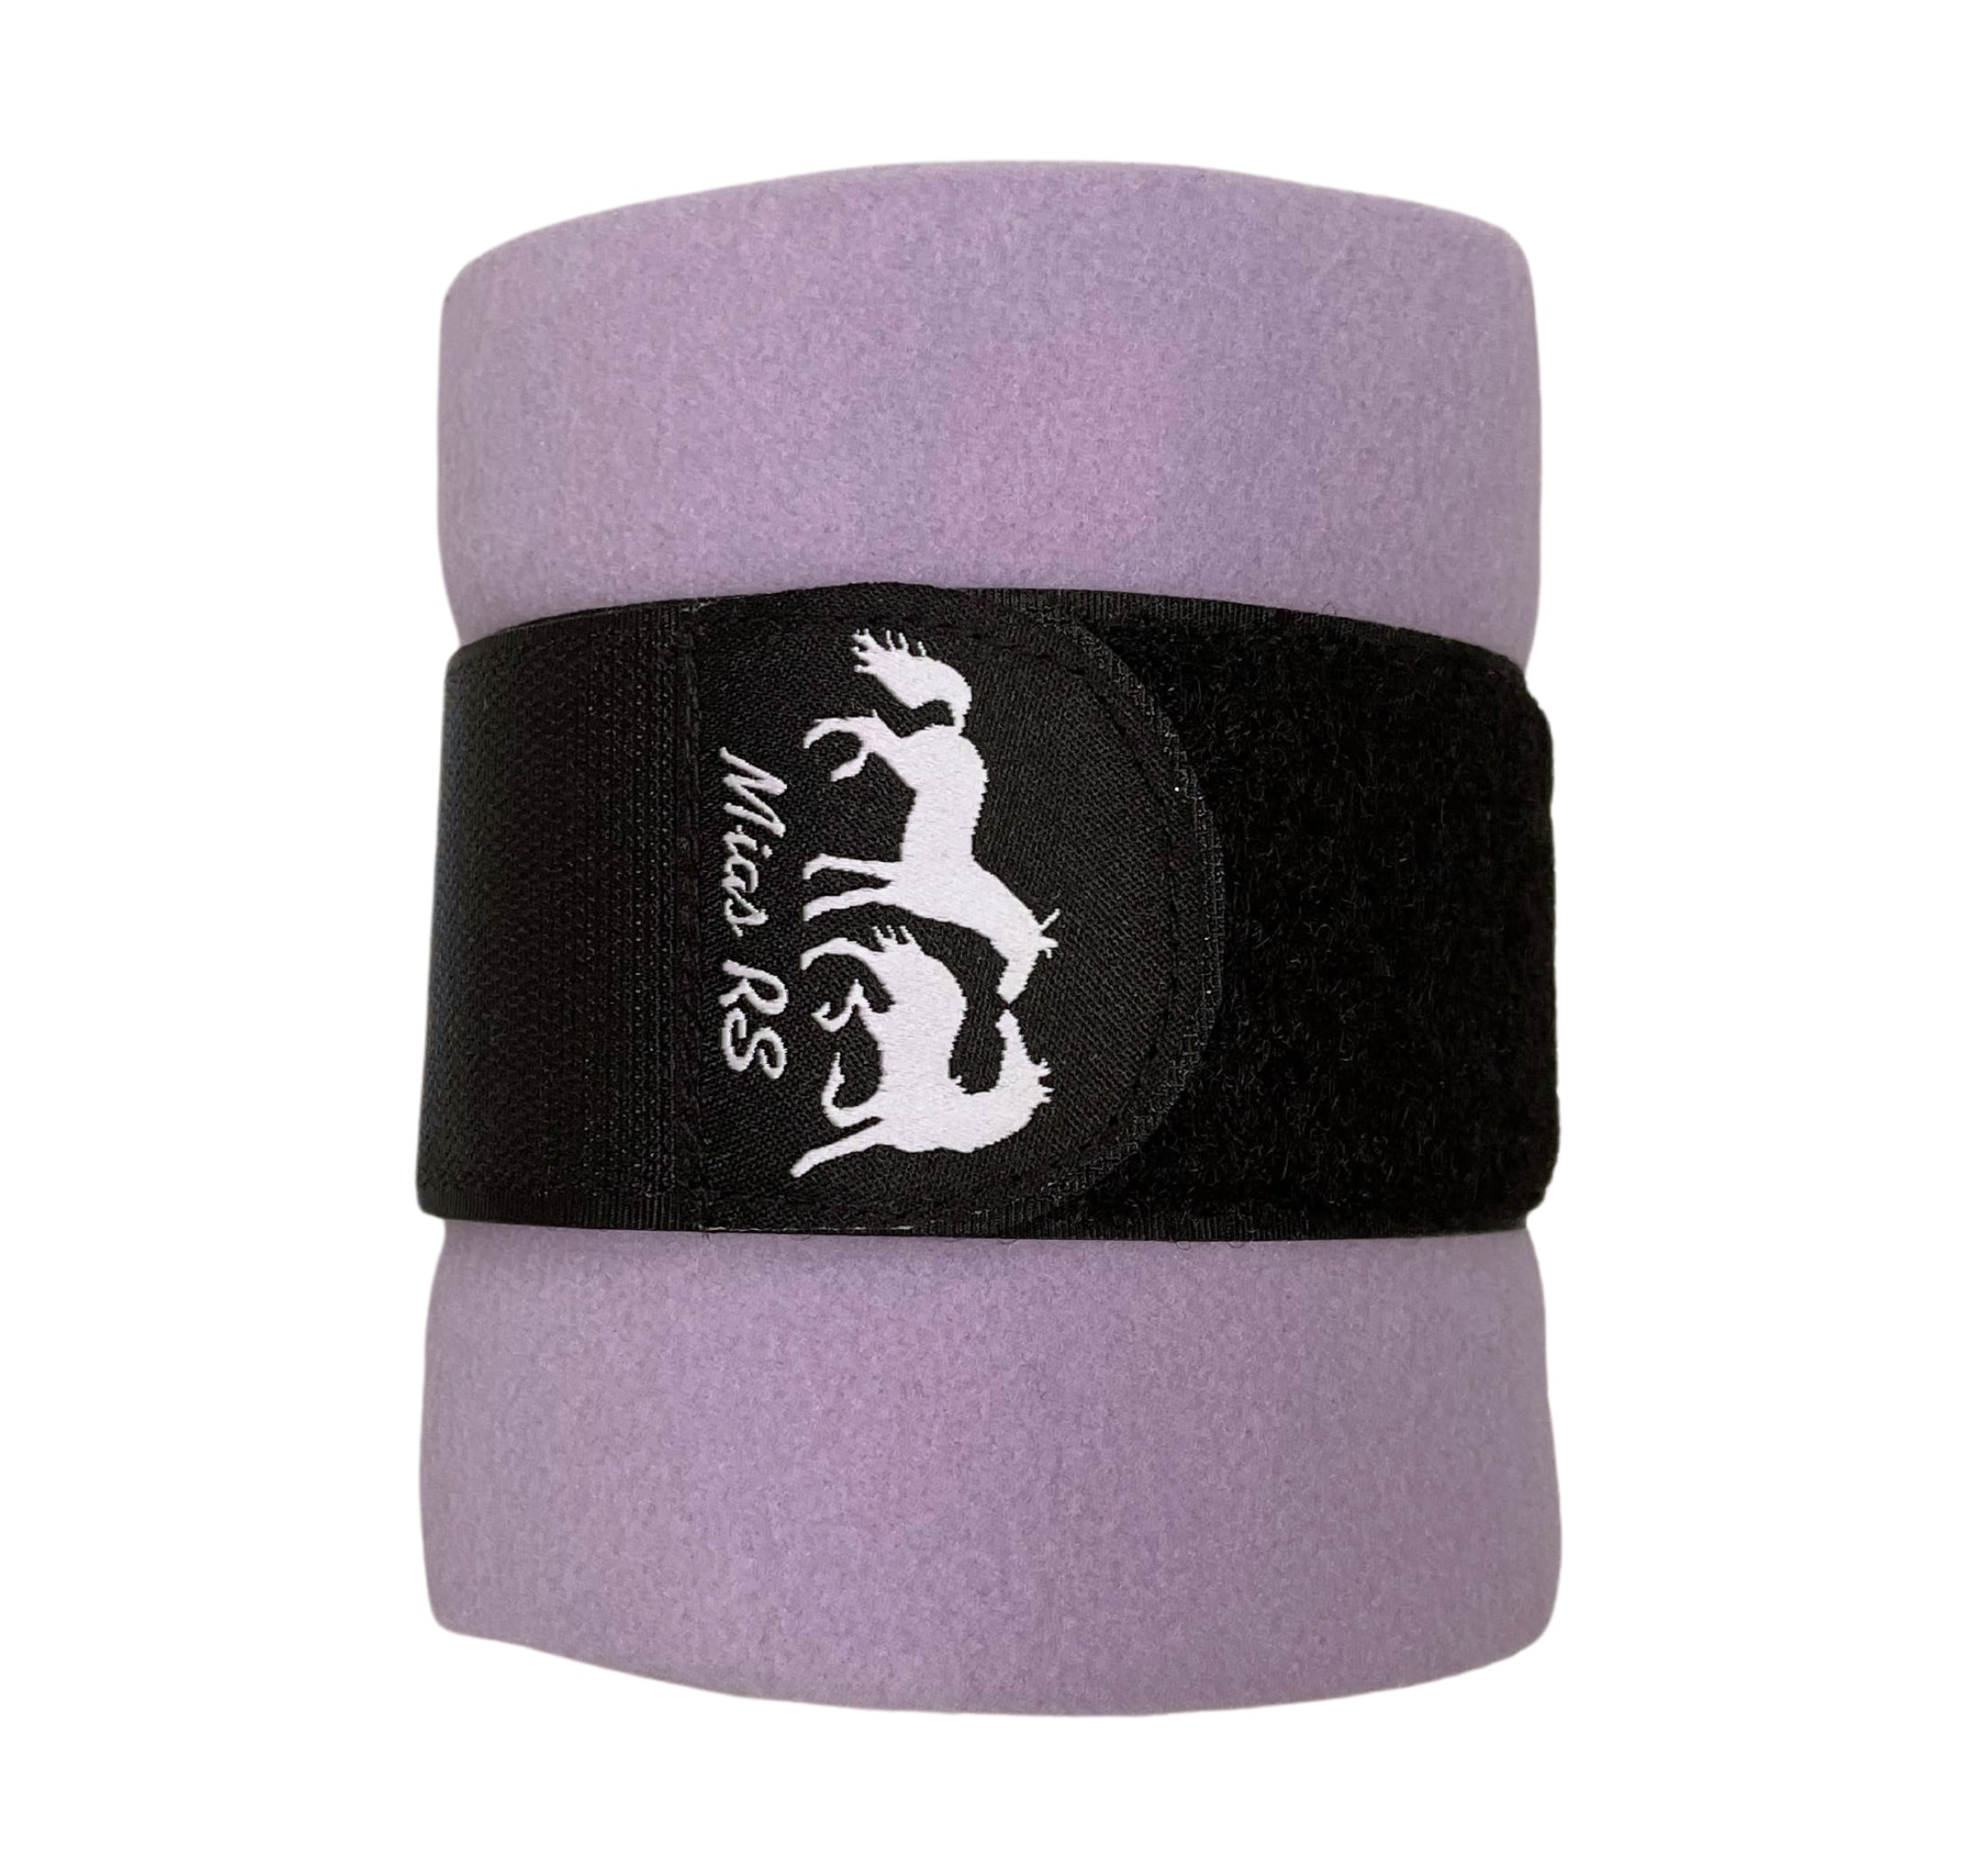 Polo Bandage - Light Purple